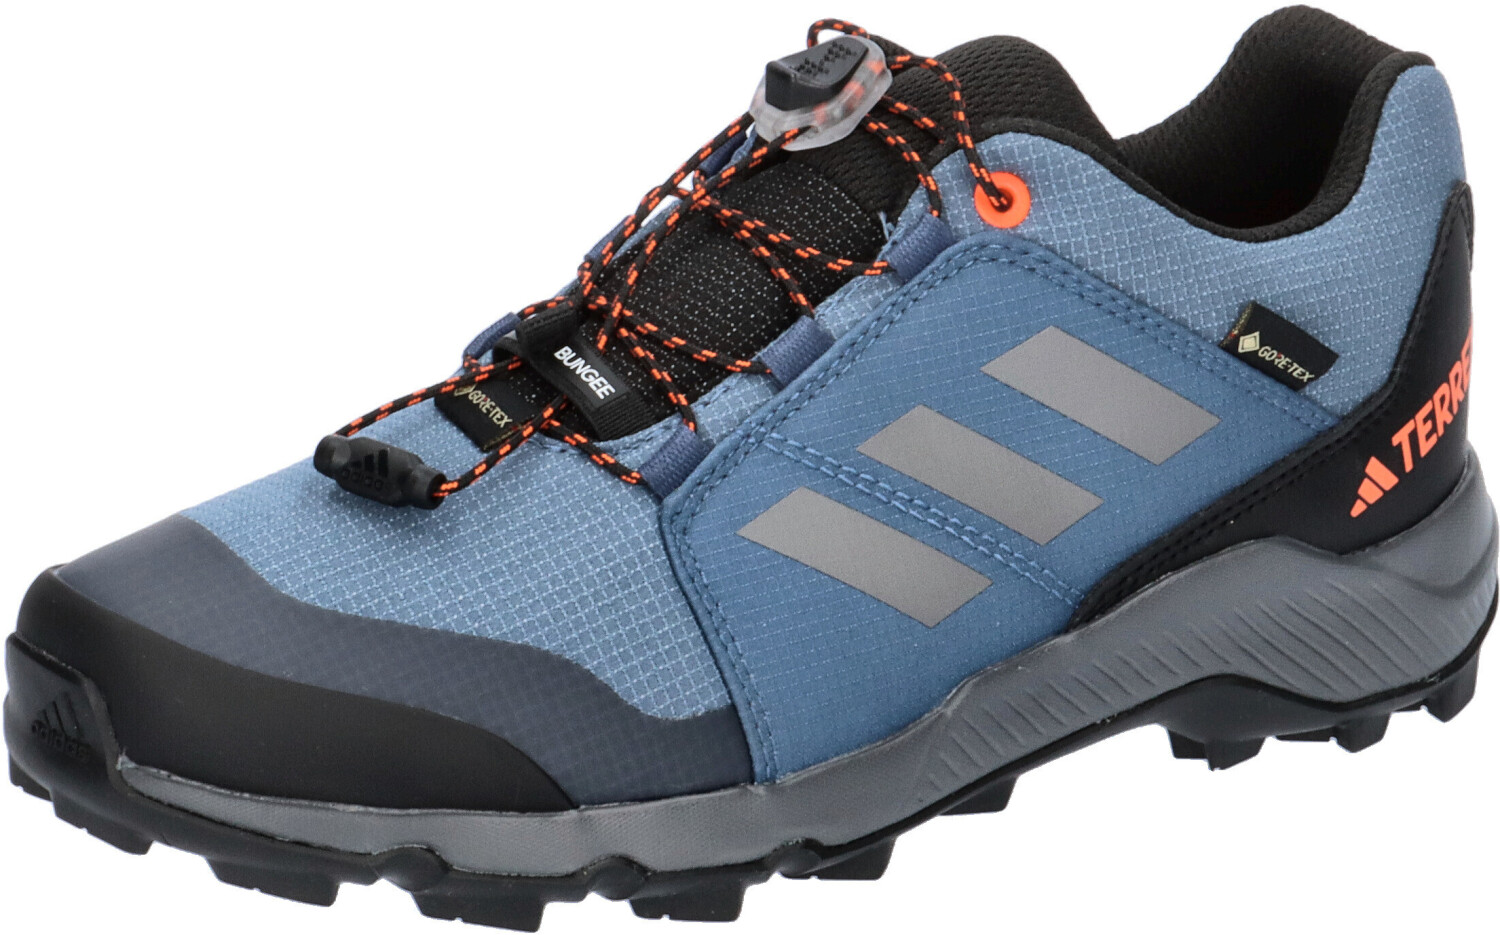 Adidas Terrex Gore-Tex | orange 59,95 Preisvergleich ab three/impact bei Hiking wonder Kids € steel/grey